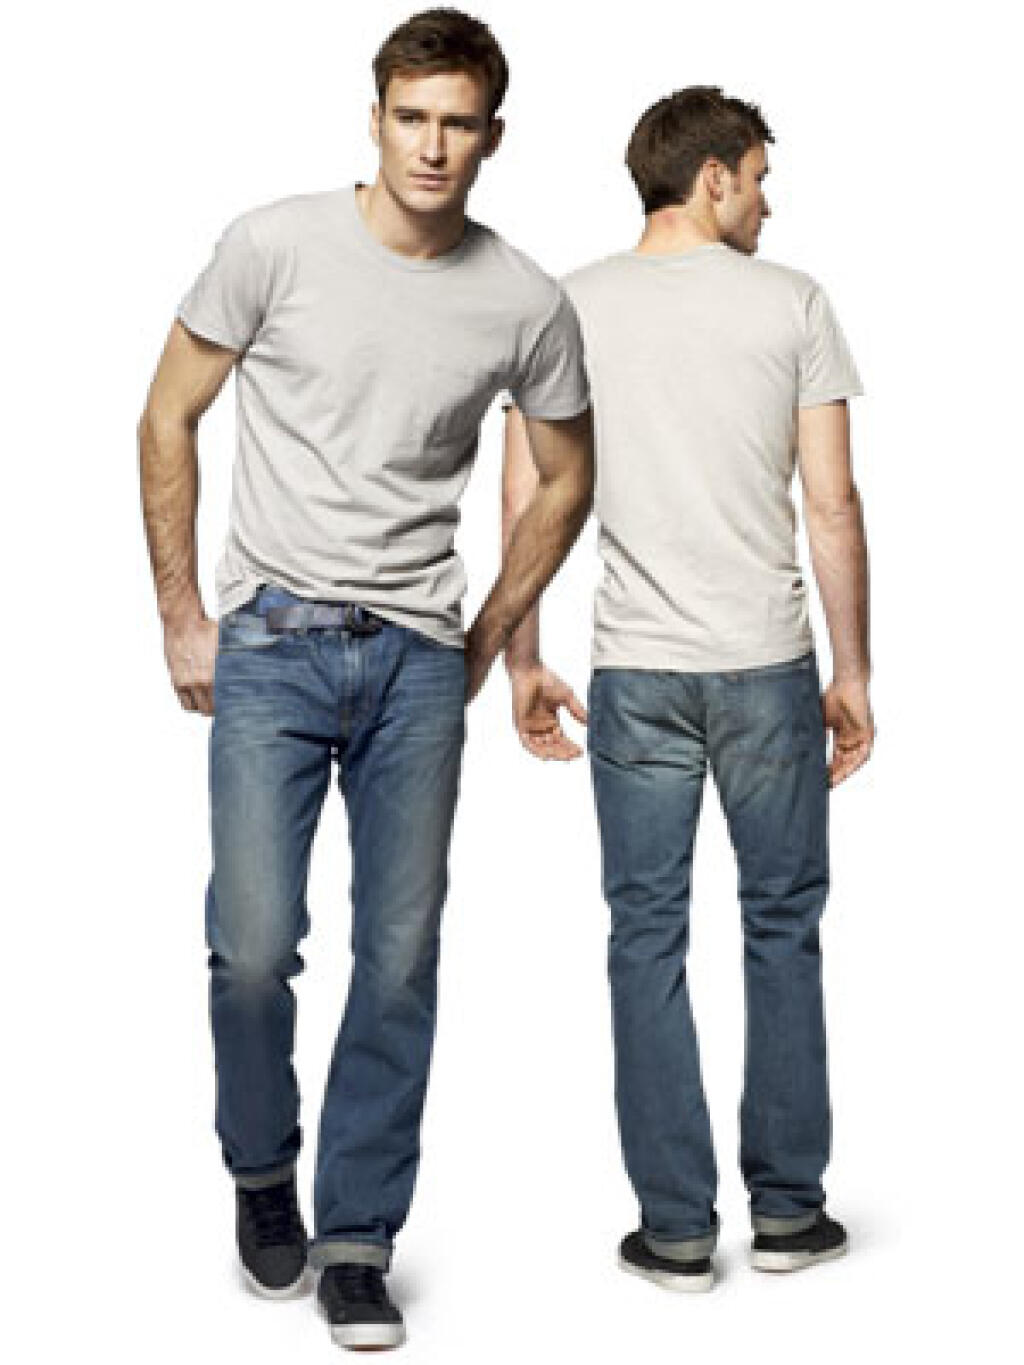 He is wearing jeans. Мужчина в джинсах и футболке. Футболка заправленная в джинсы мужские. Заправленная футболка в джинсы у мужчины. Заправленная майка в джинсы мужчине.